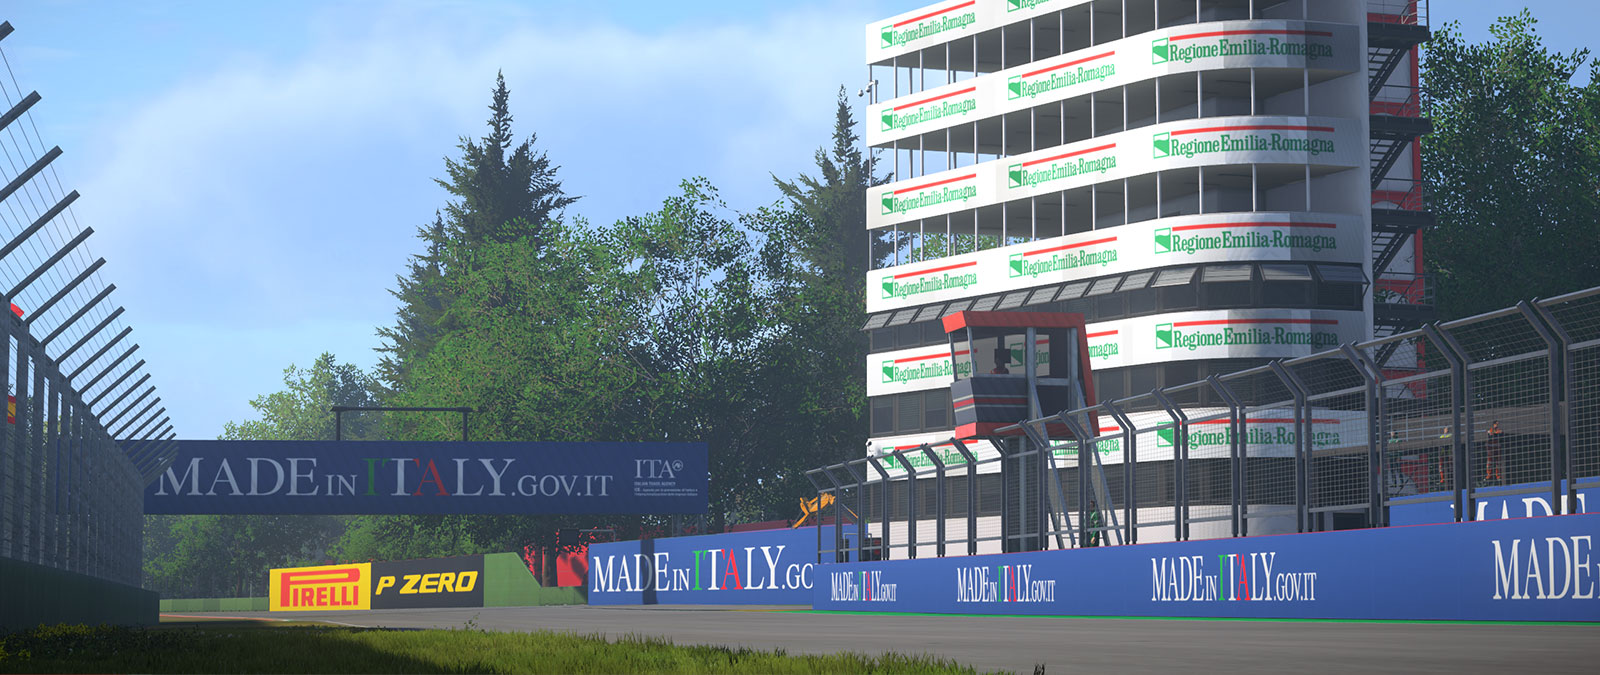 Autódromo de Imola con un edificio con muchos balcones sobre un muro de ”patrocinado por Made In Italy”